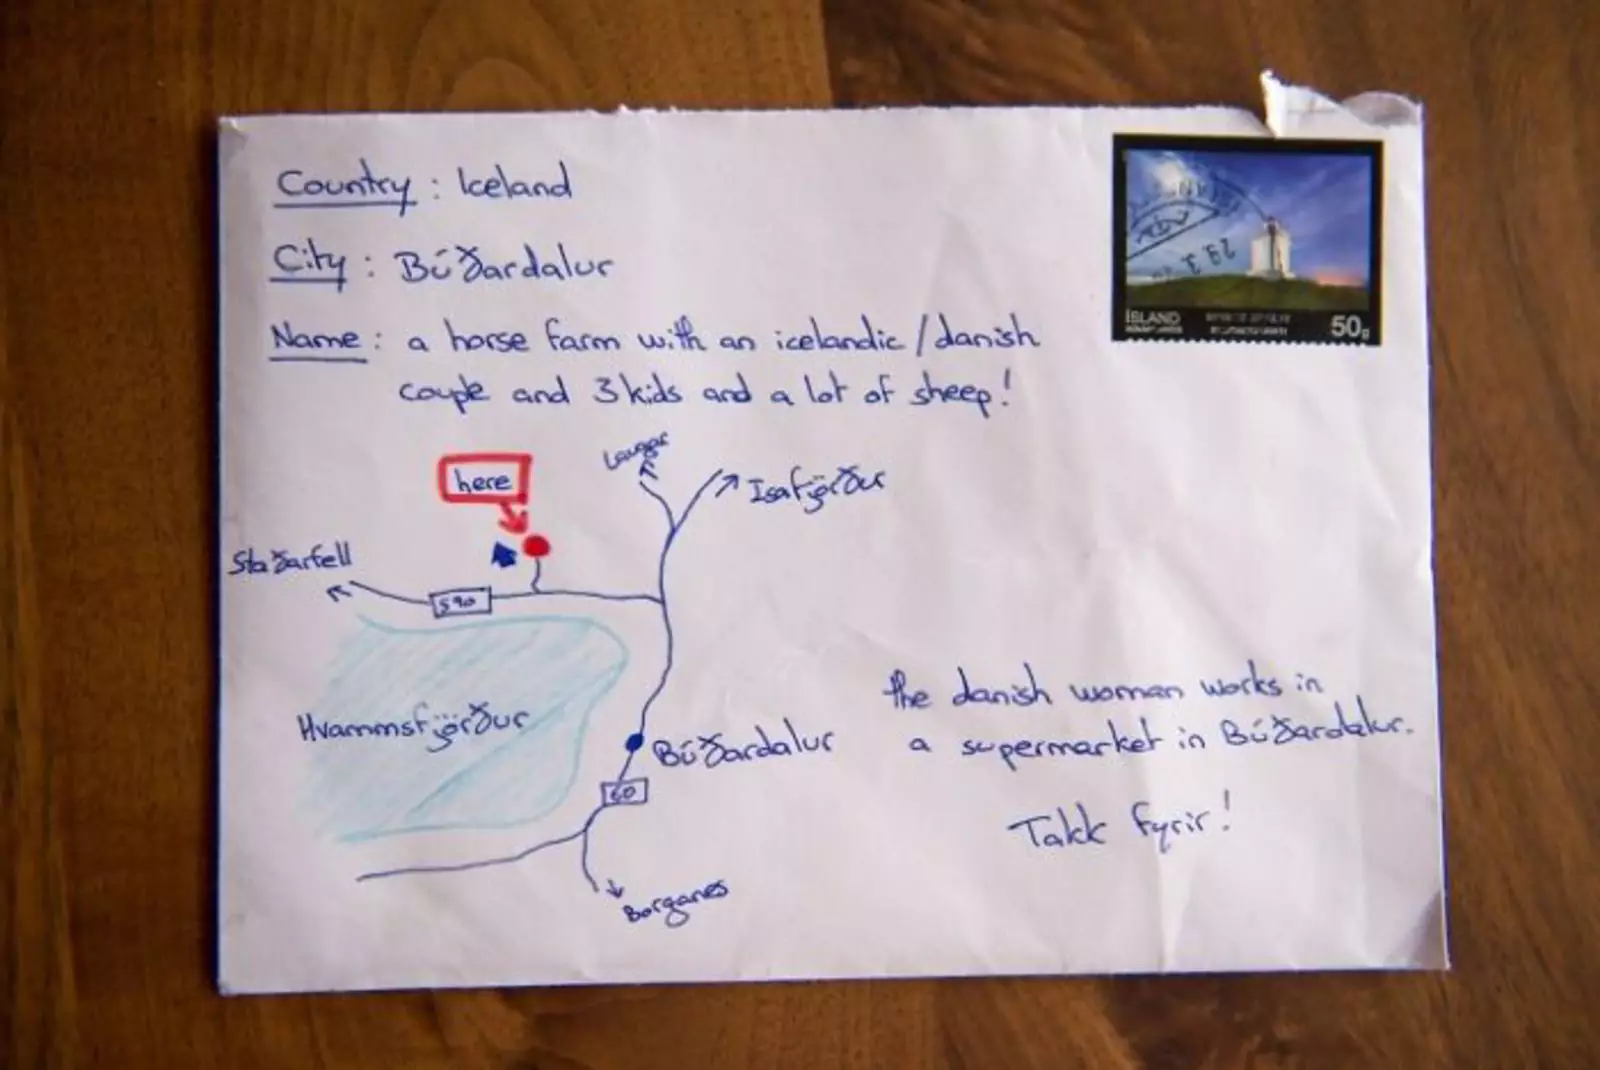 Человек не знал адреса, поэтому нарисовал карту, как добраться до адресата. Почтовая служба Исландии справилась со своей задачей.